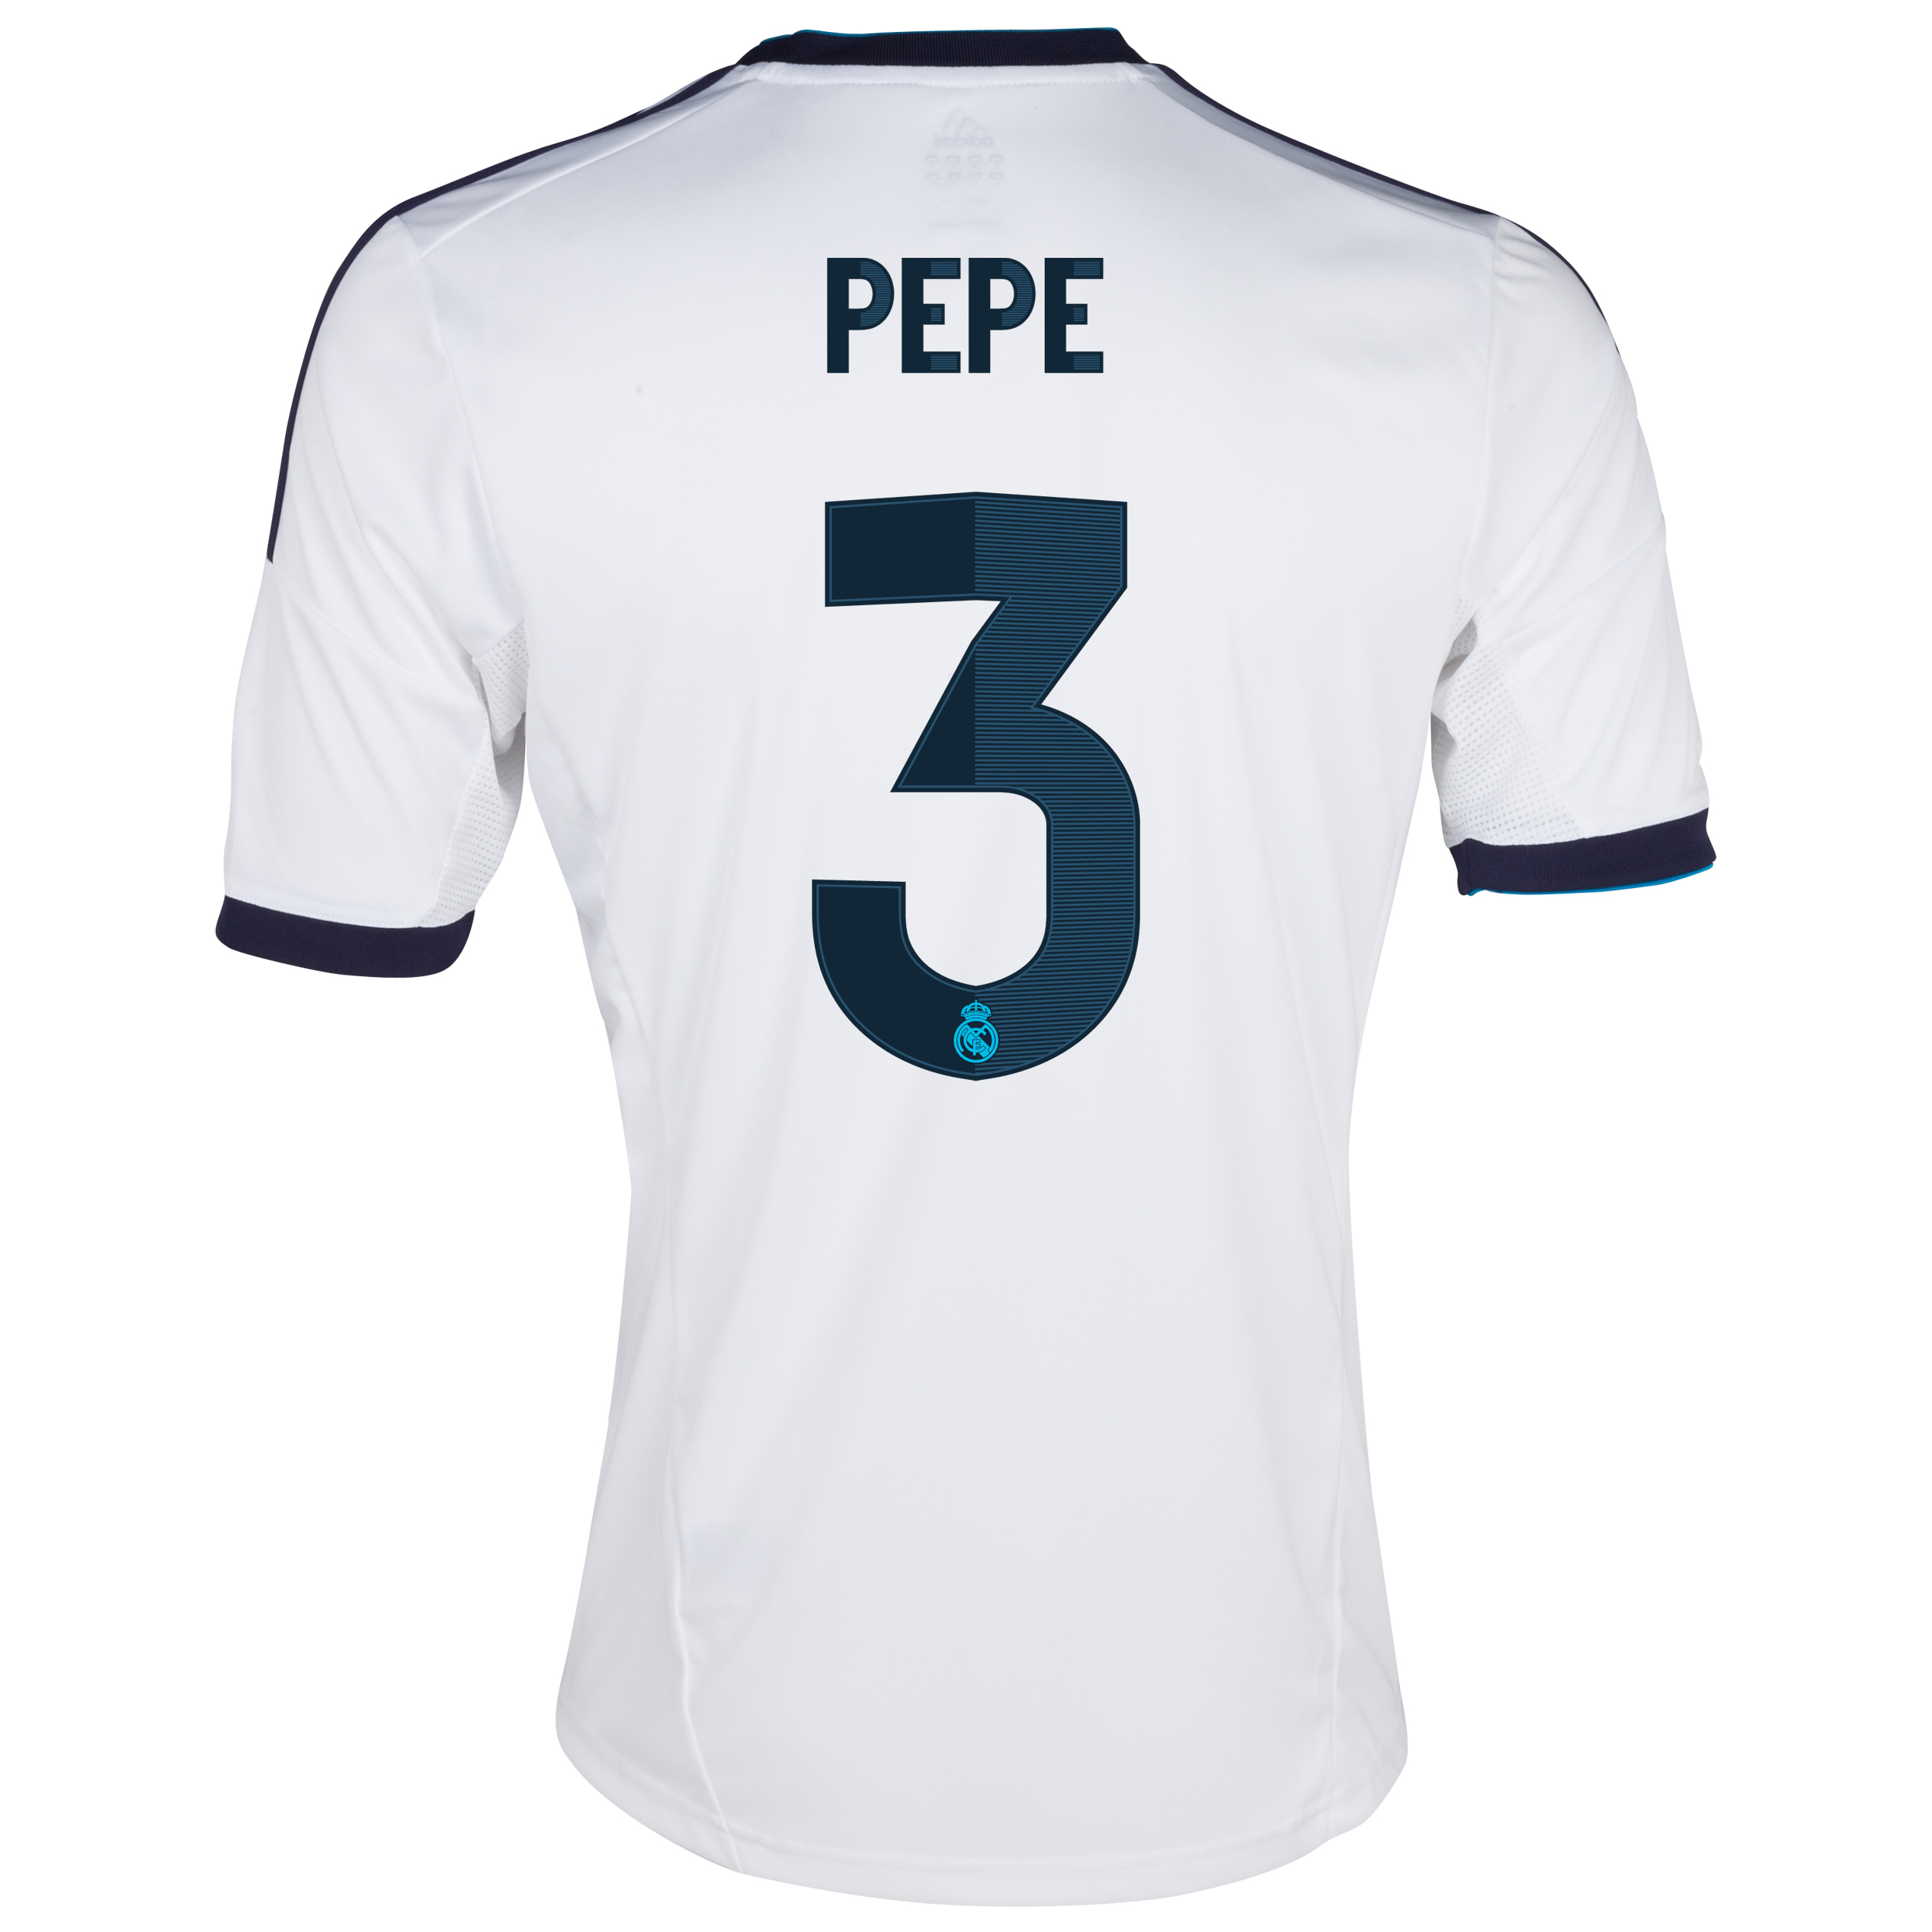 Pepe Name